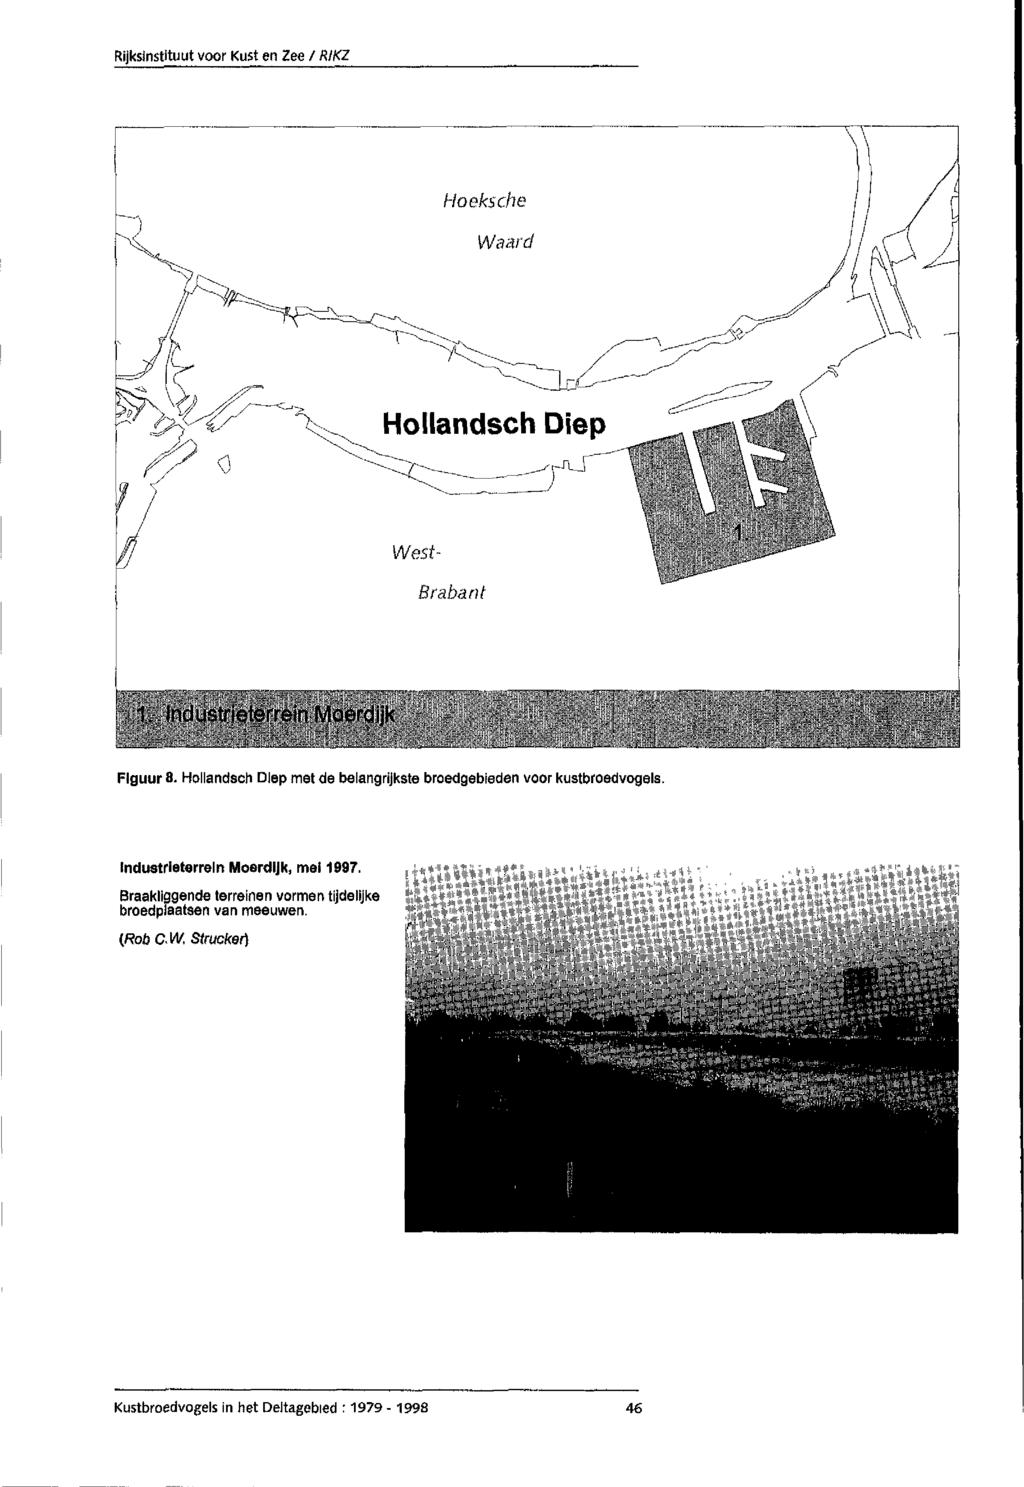 Hoeksche Waard Hollandsch Diep West Brabant 1. Industrieterrein Moerdijk Figuur 8. Hollandsch Diep met de belangrijkste broedgebieden voor kustbroedvogels.